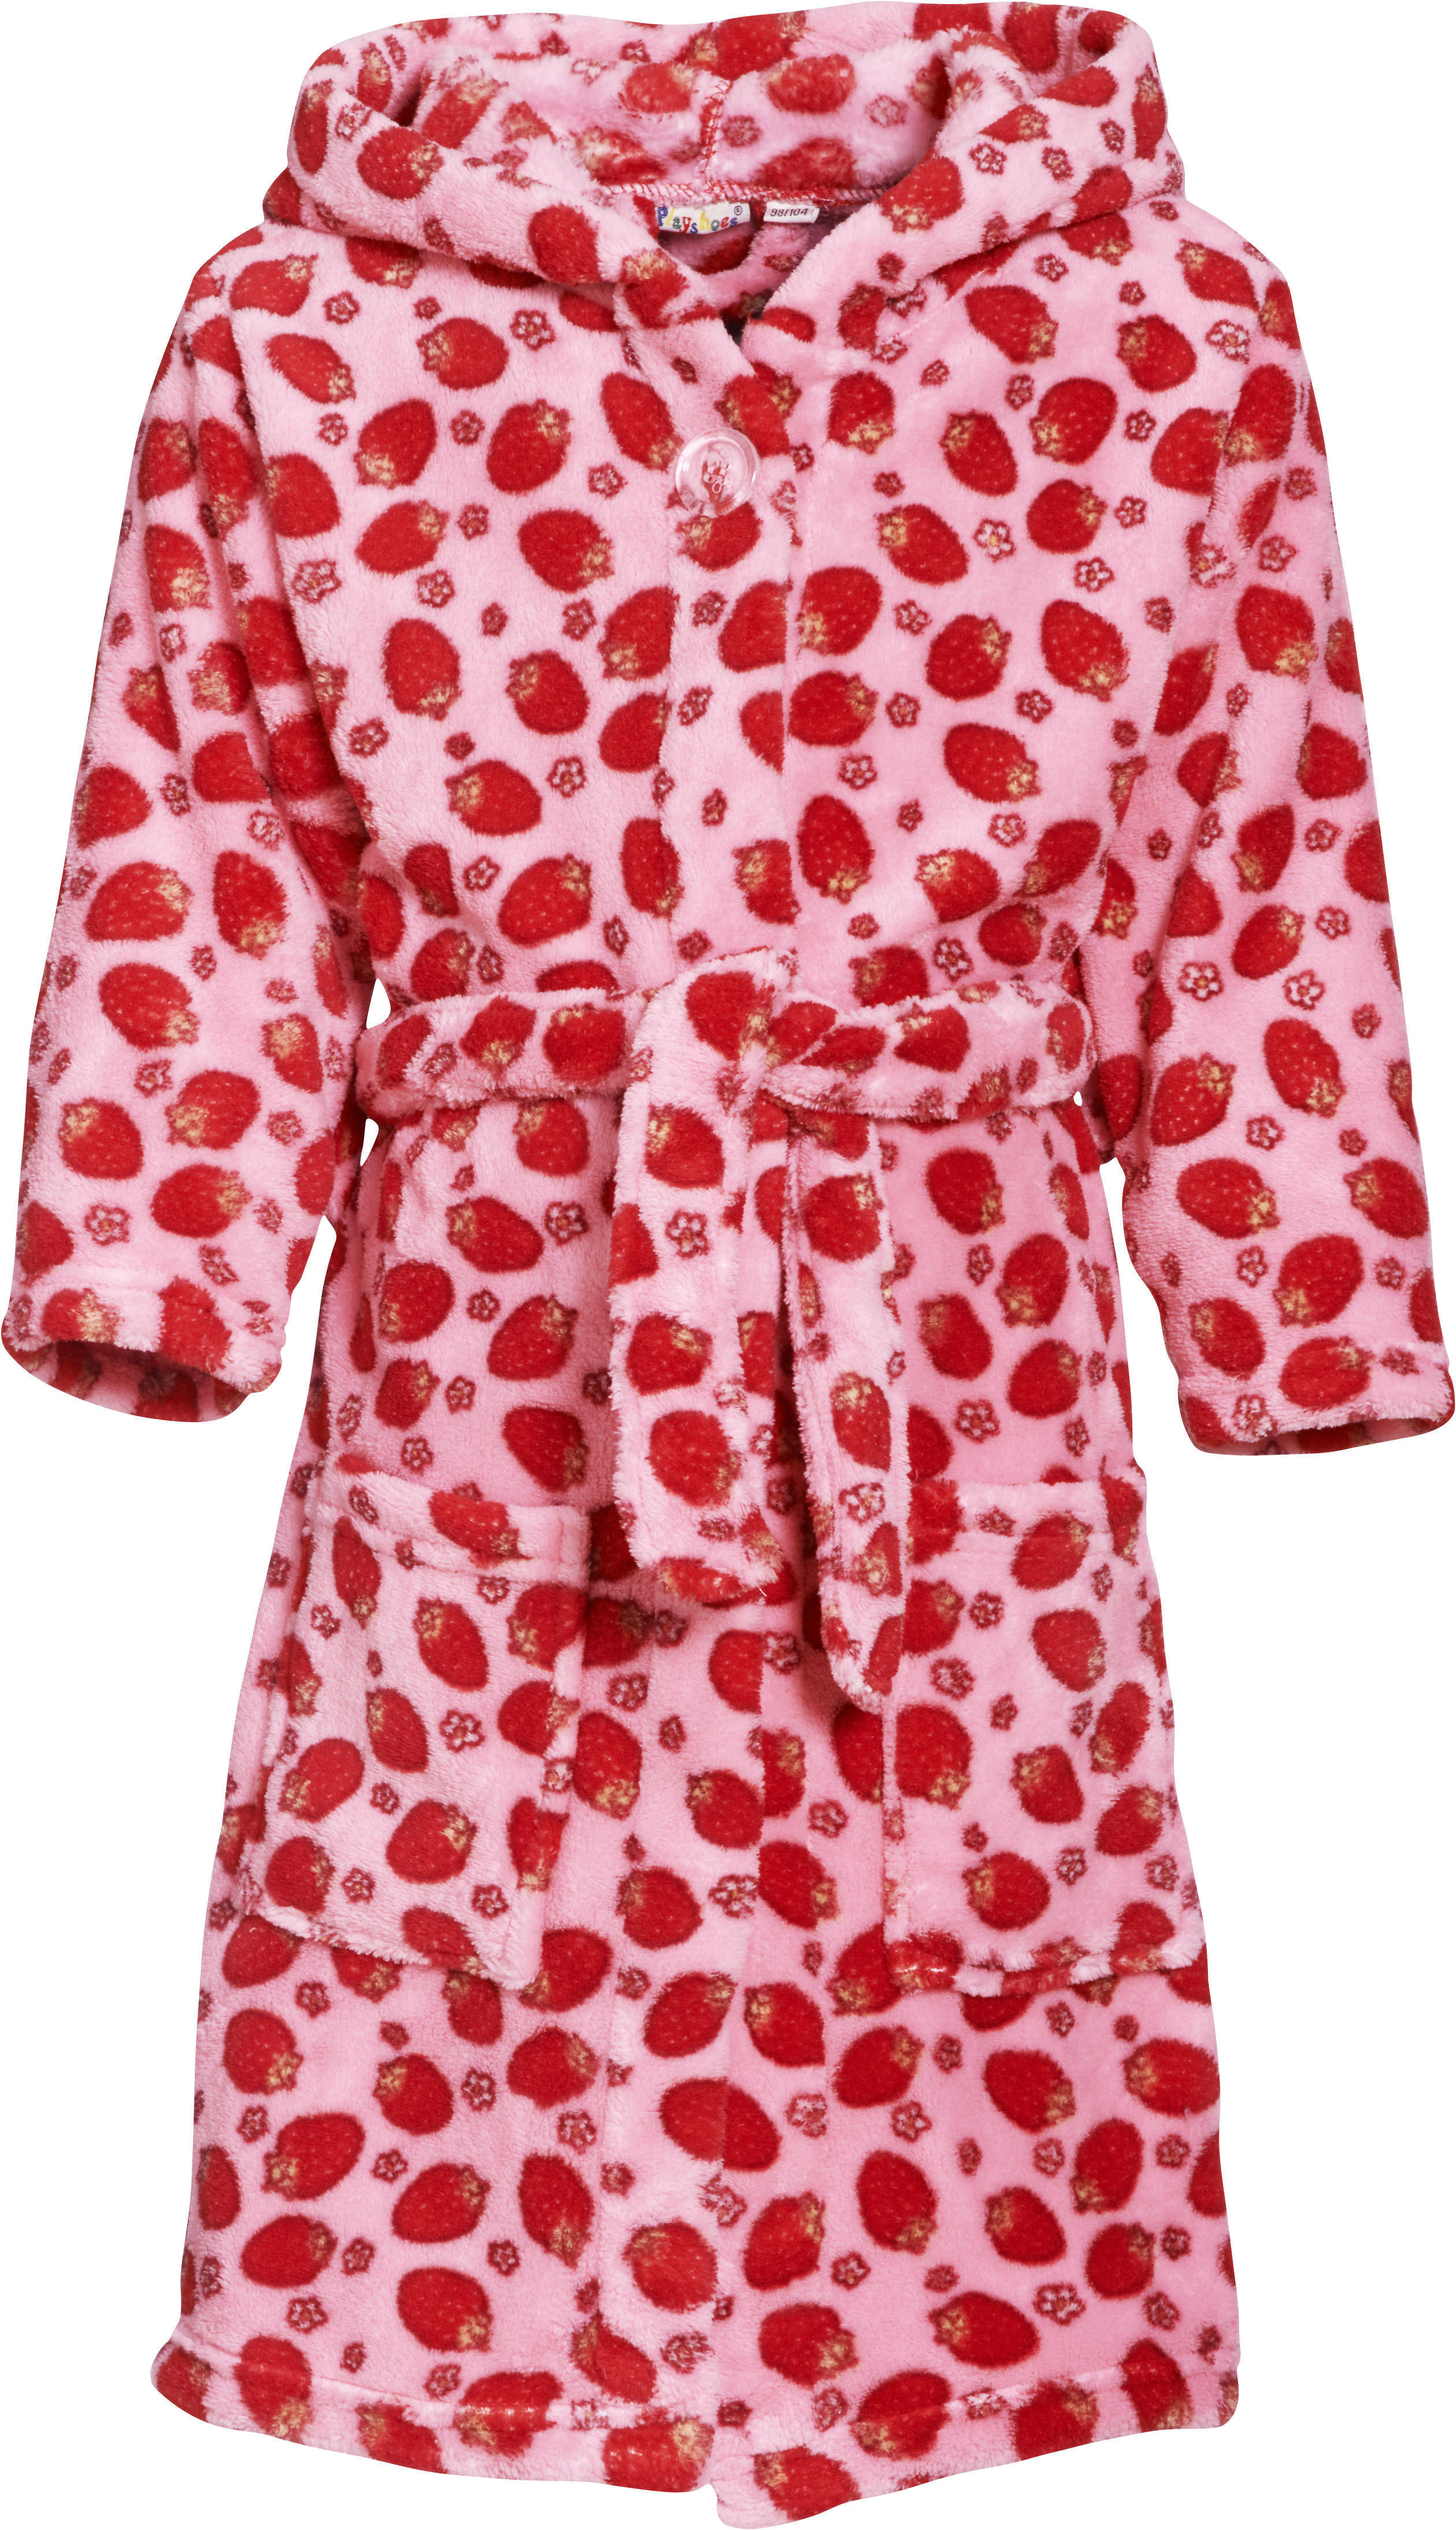 Playshoes fleece badjas Strawberries met aardbei dessin roze/rood online kopen